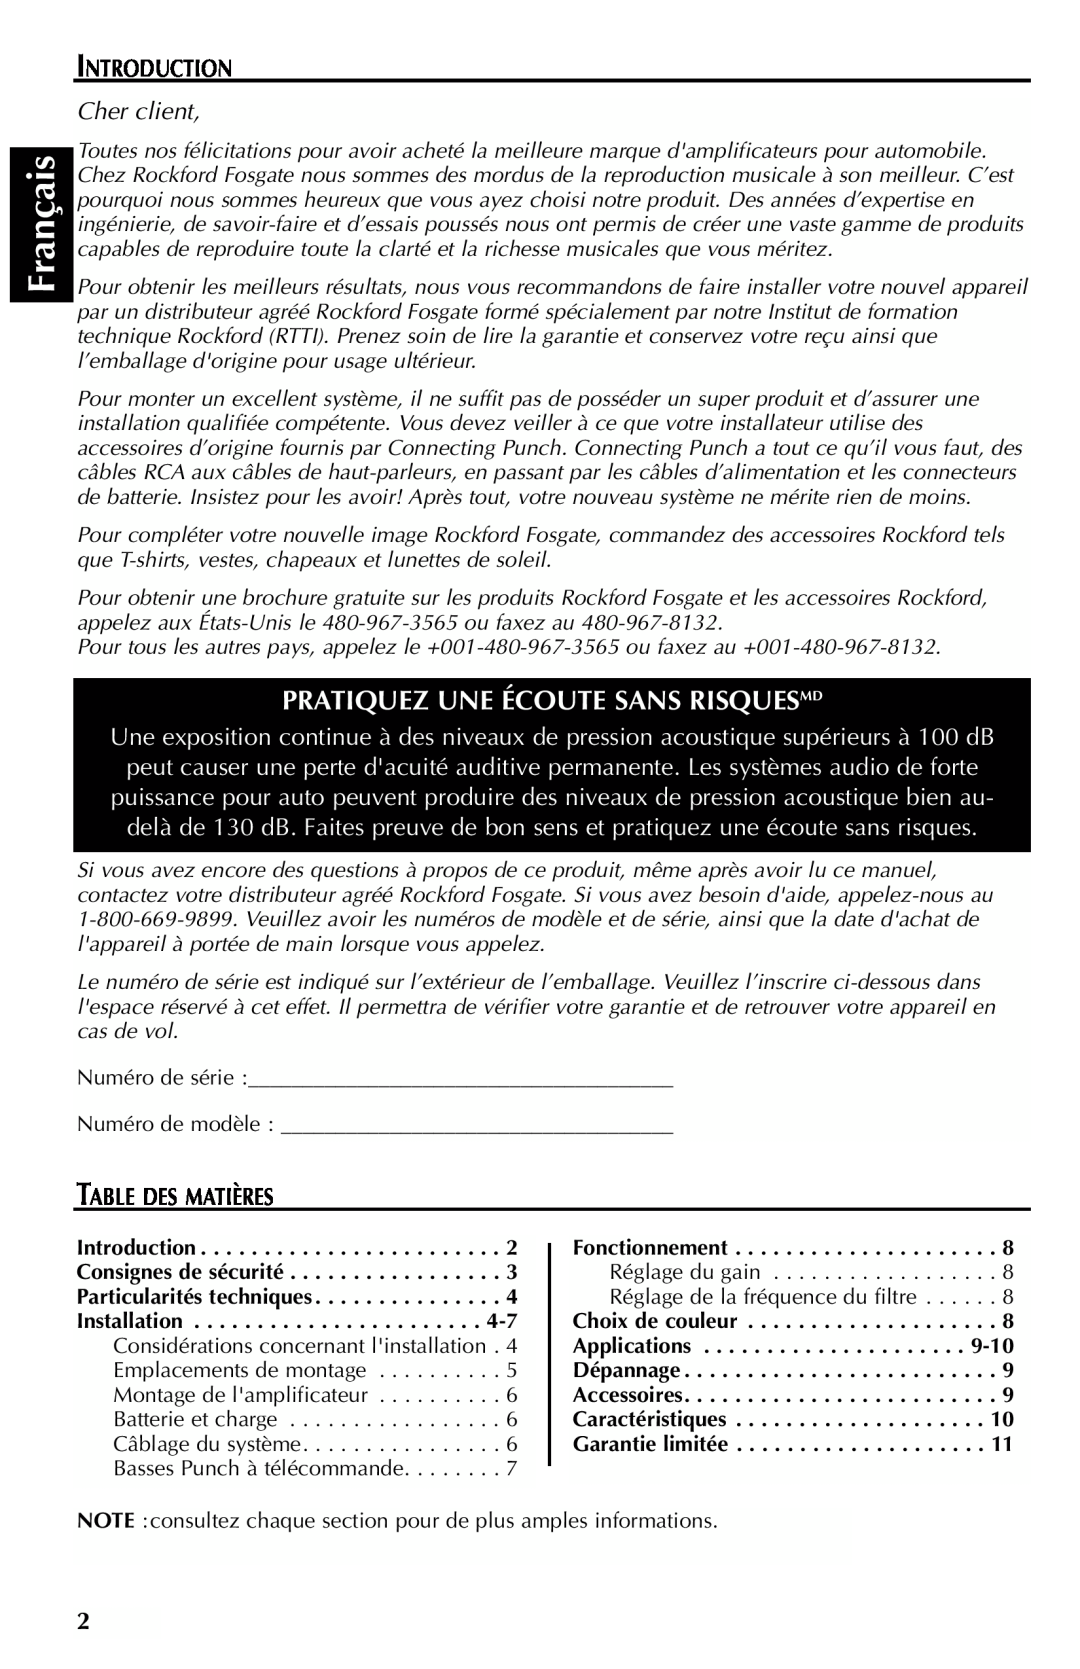 Rockford Fosgate FFX6 manual Français, Pratiquez Une Écoute Sans Risquesmd, Introduction, Cher client, Table Des Matières 